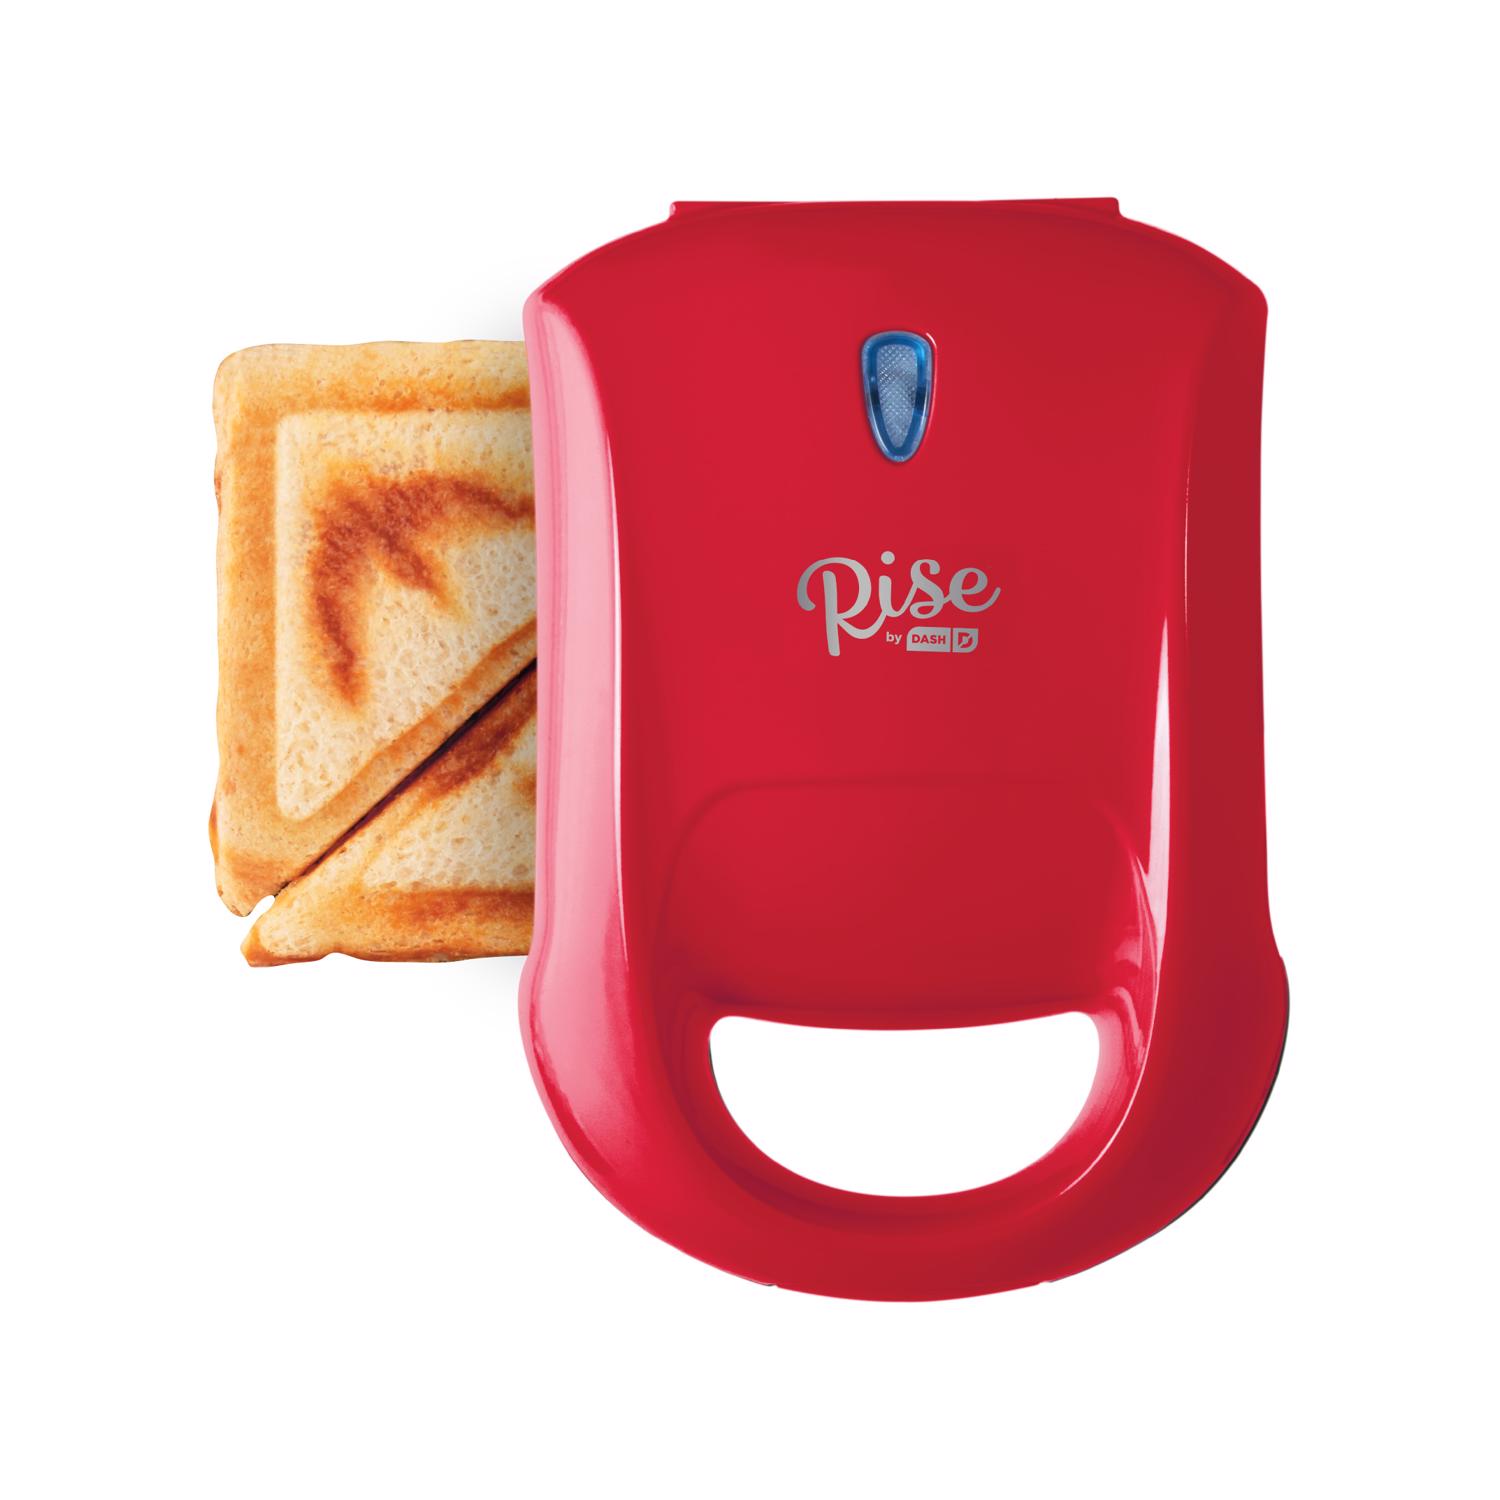 Dash Express Pocket Sandwich Maker - Red - Shop Griddles & Presses